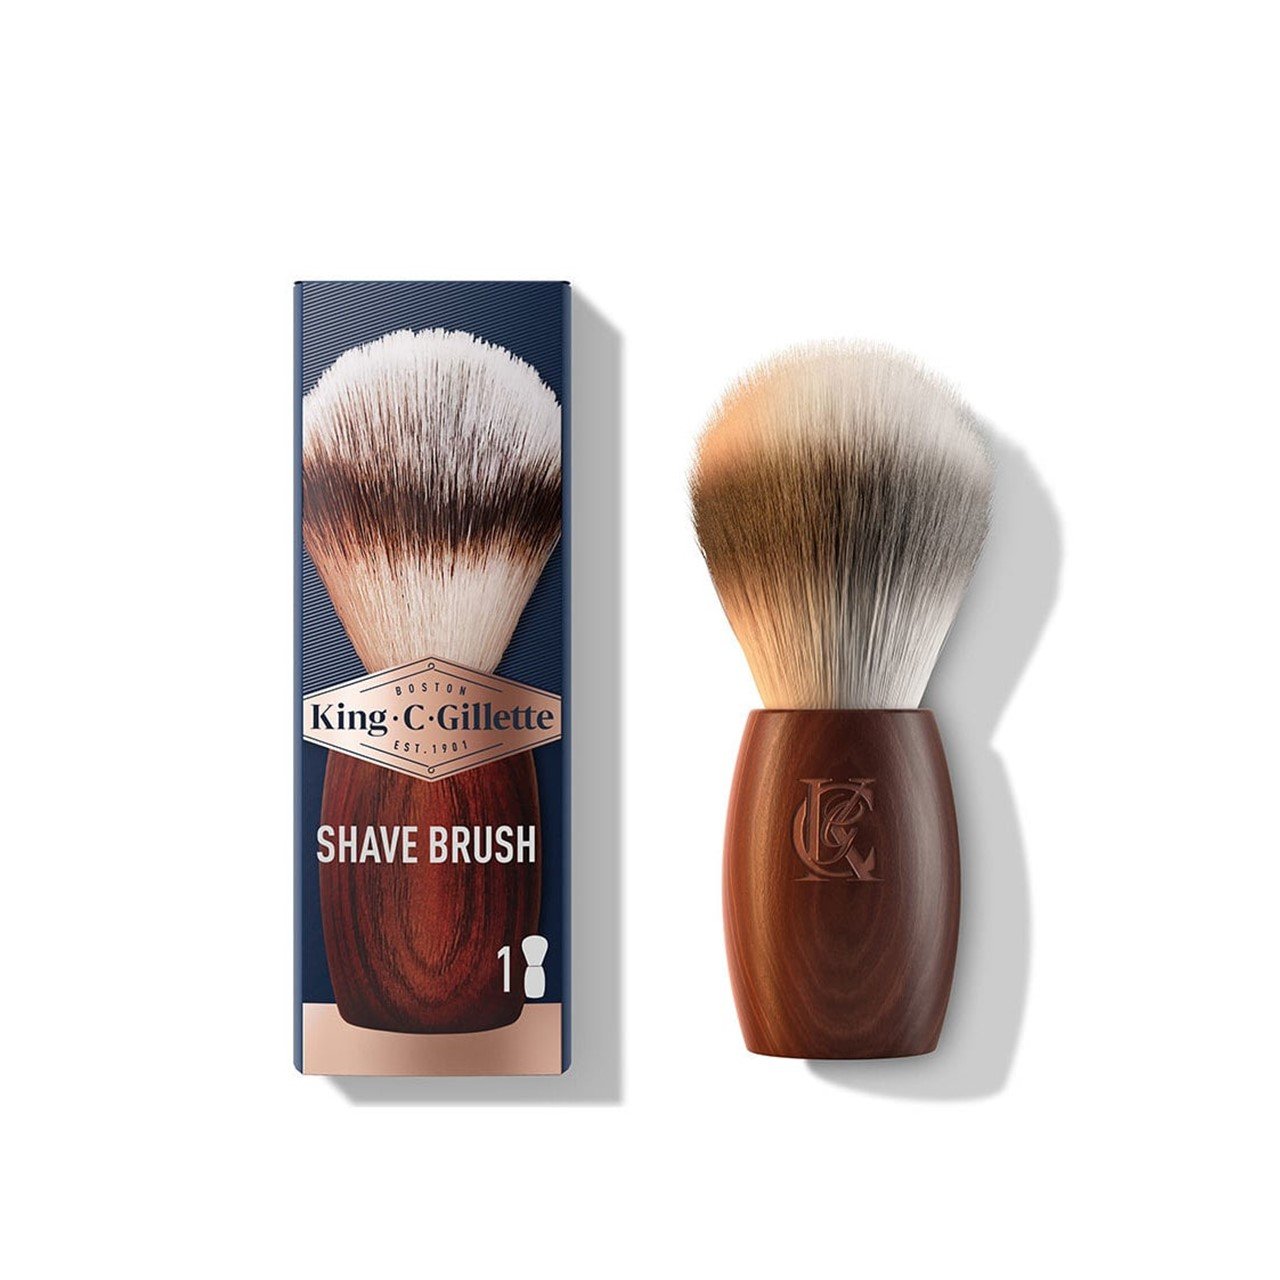 King C. Gillette Shave Brush